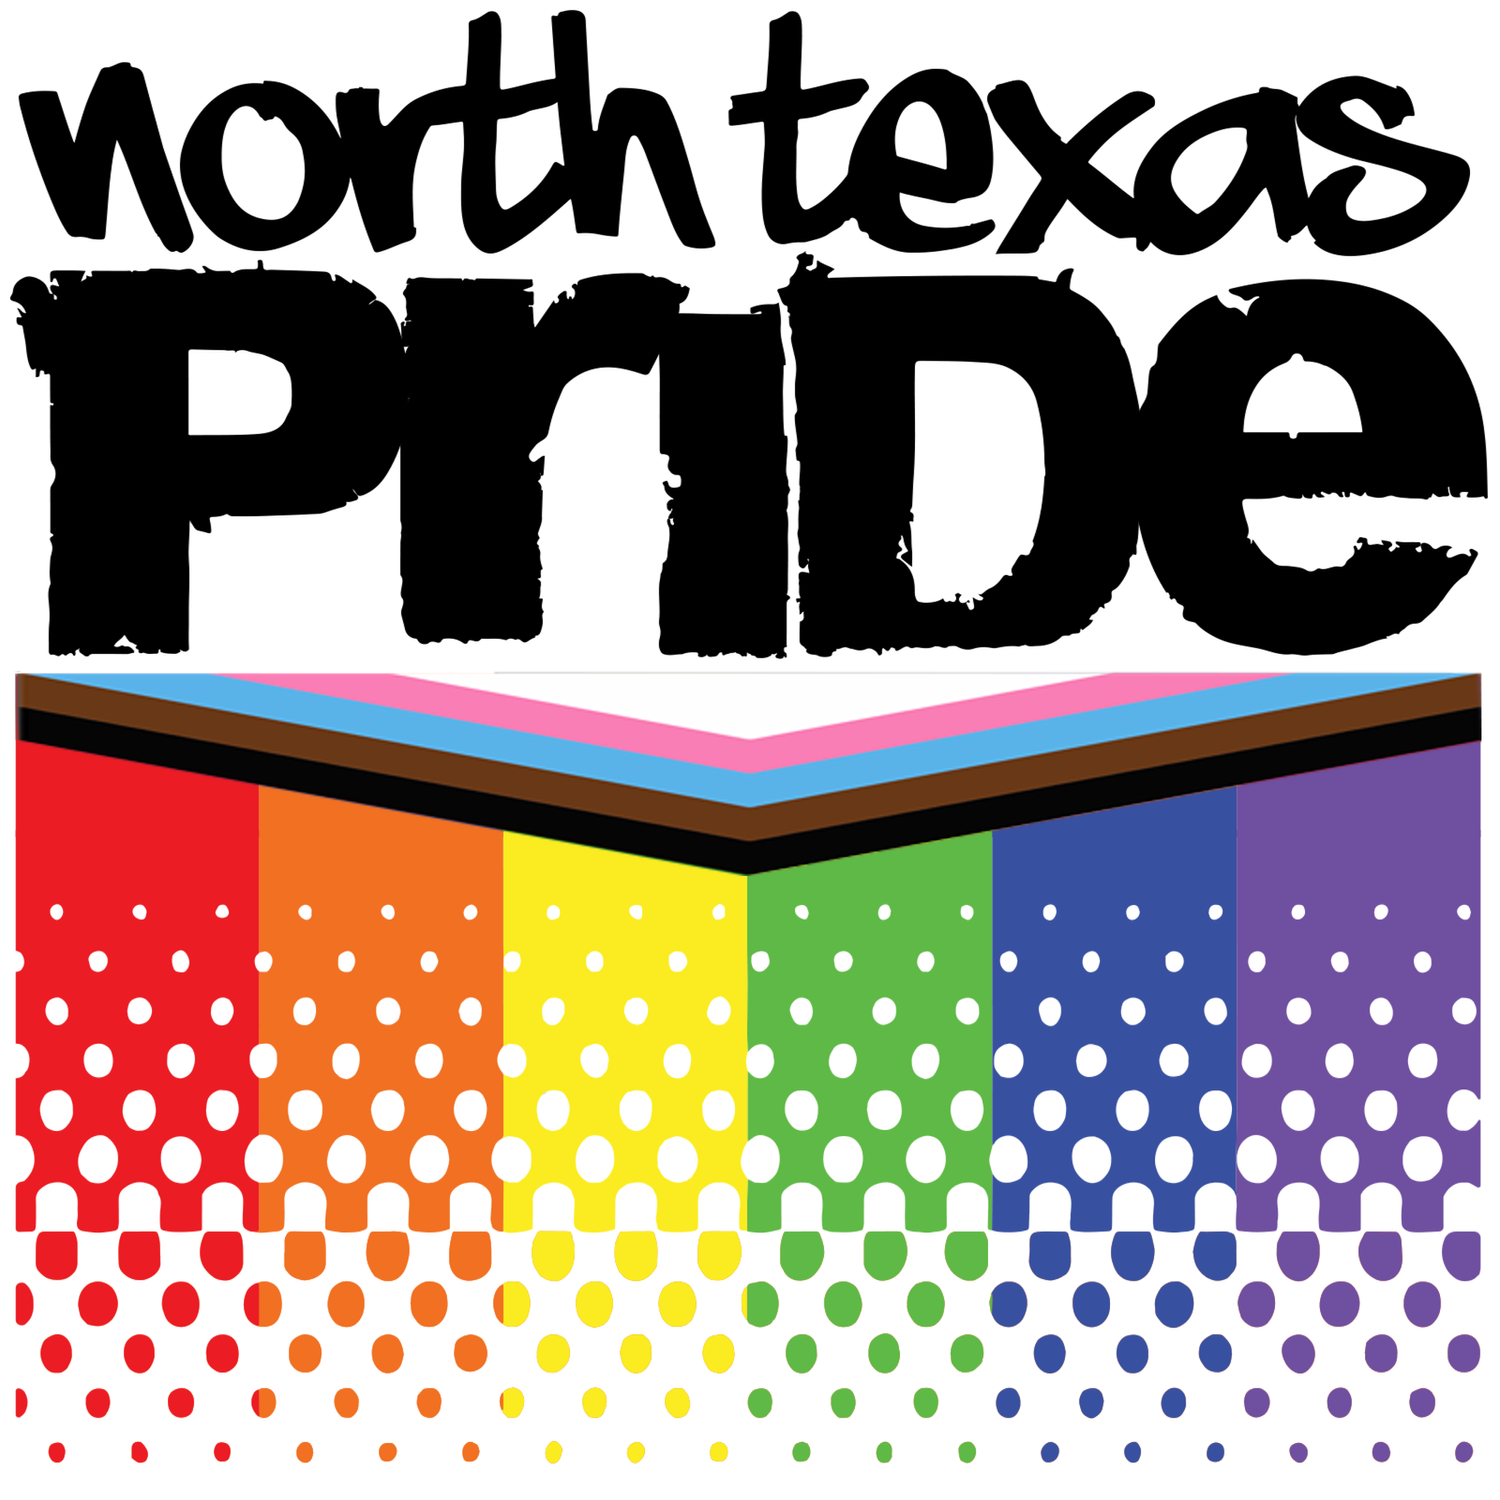 North Texas Pride Foundation